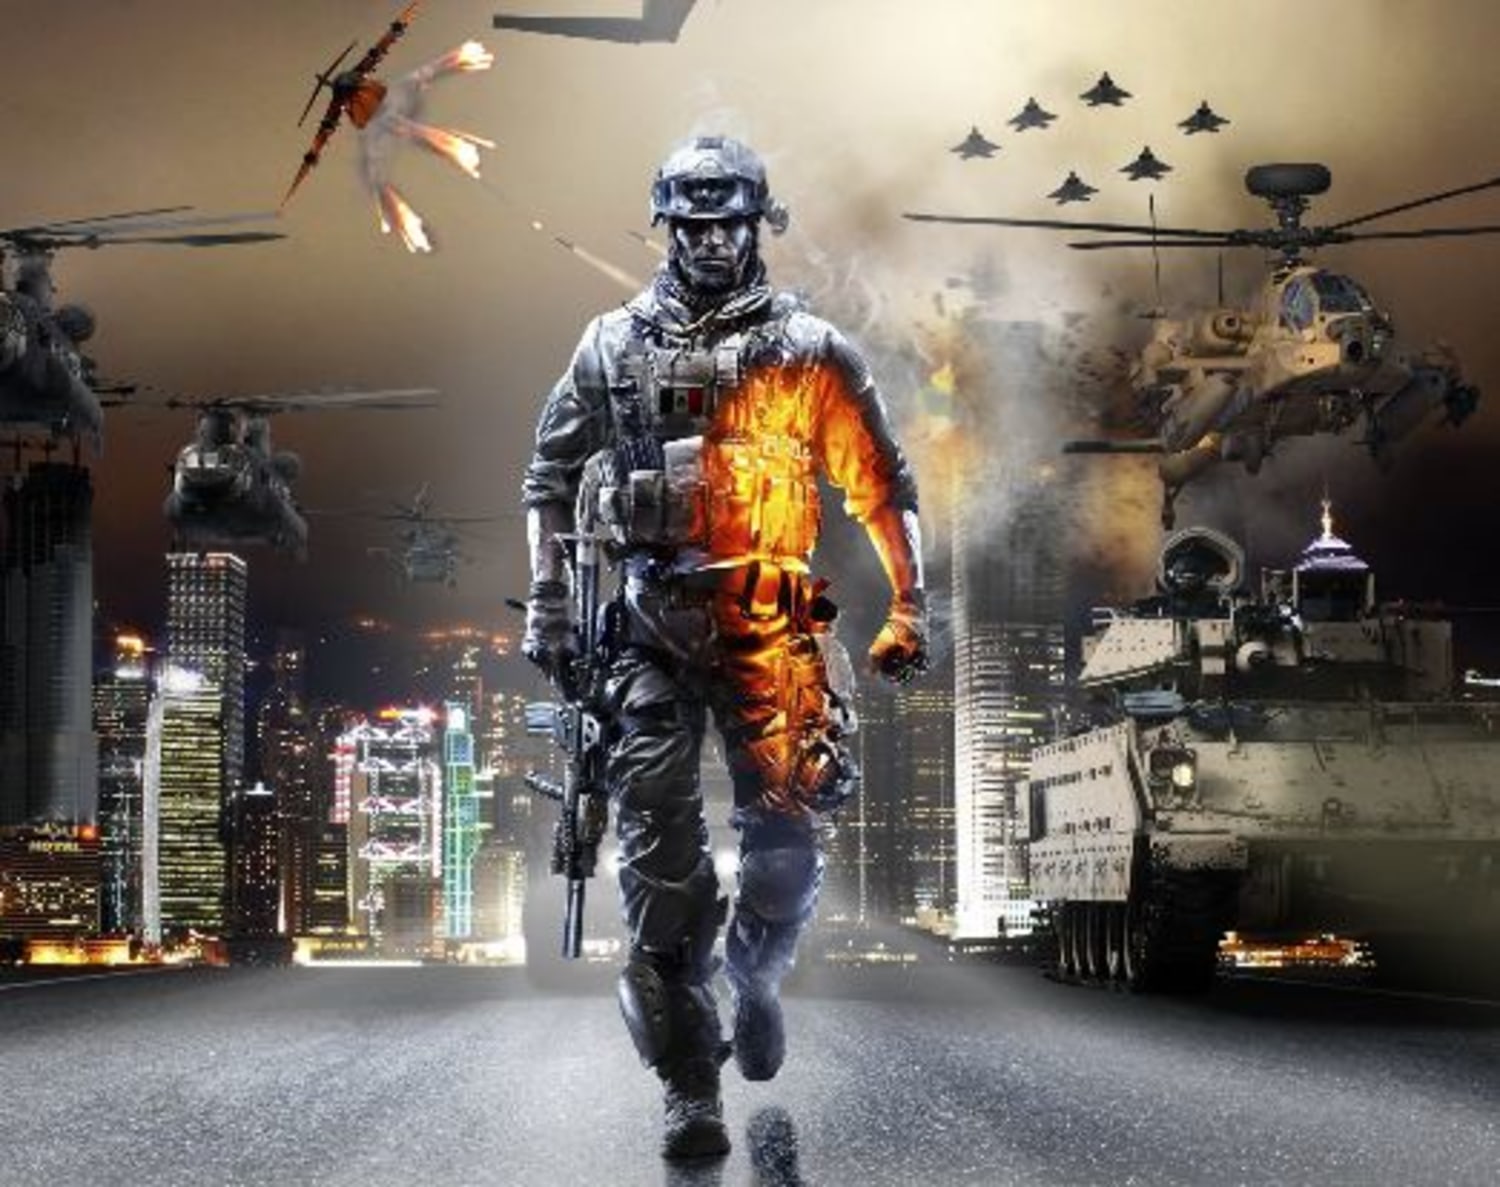 Battlefield 4 beta open to all Battlefield 3 Premium subscribers